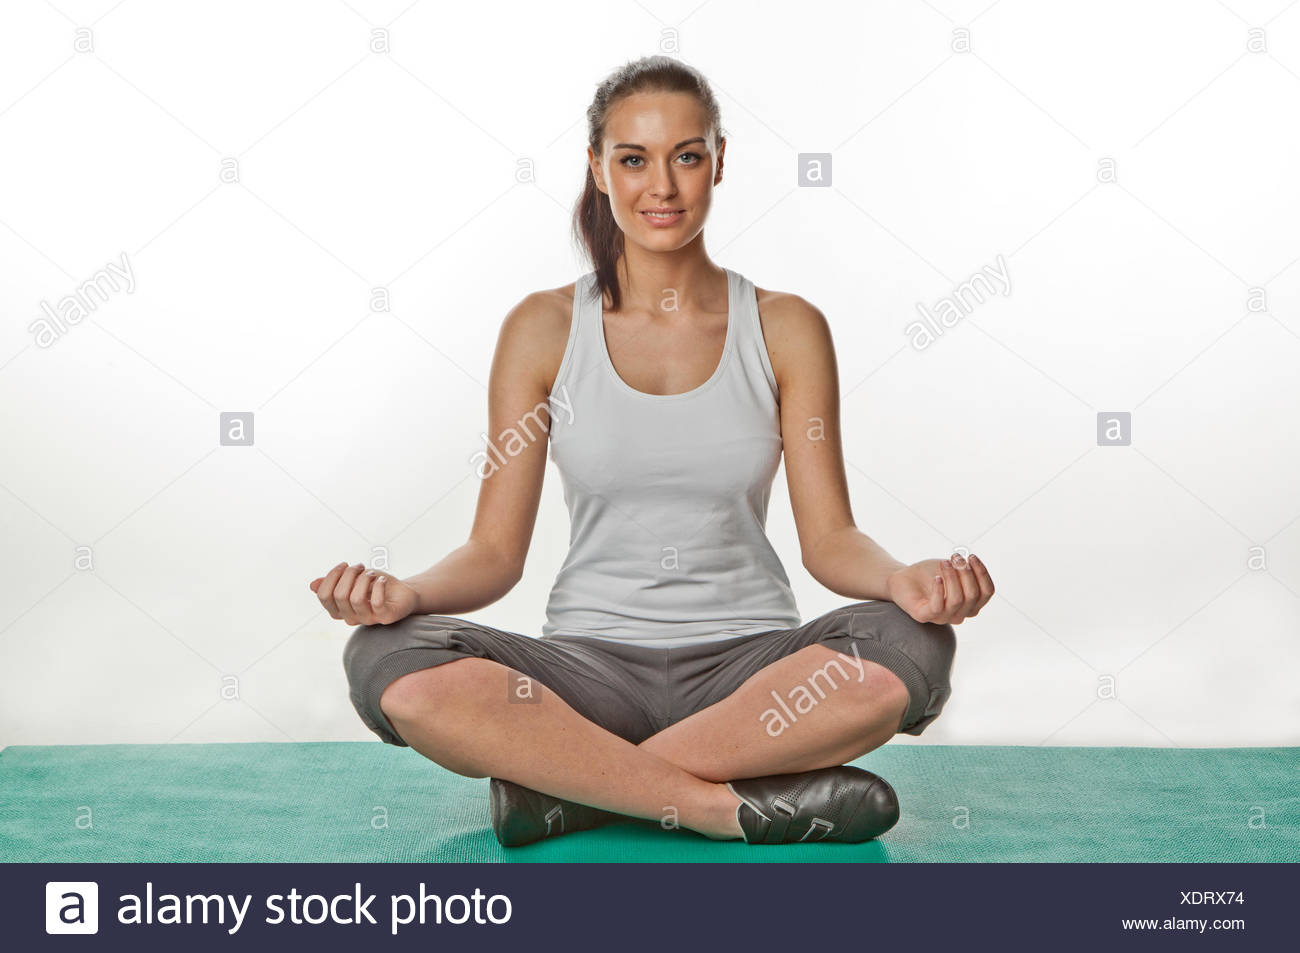 Problem with sitting cross-legged : r/flexibility